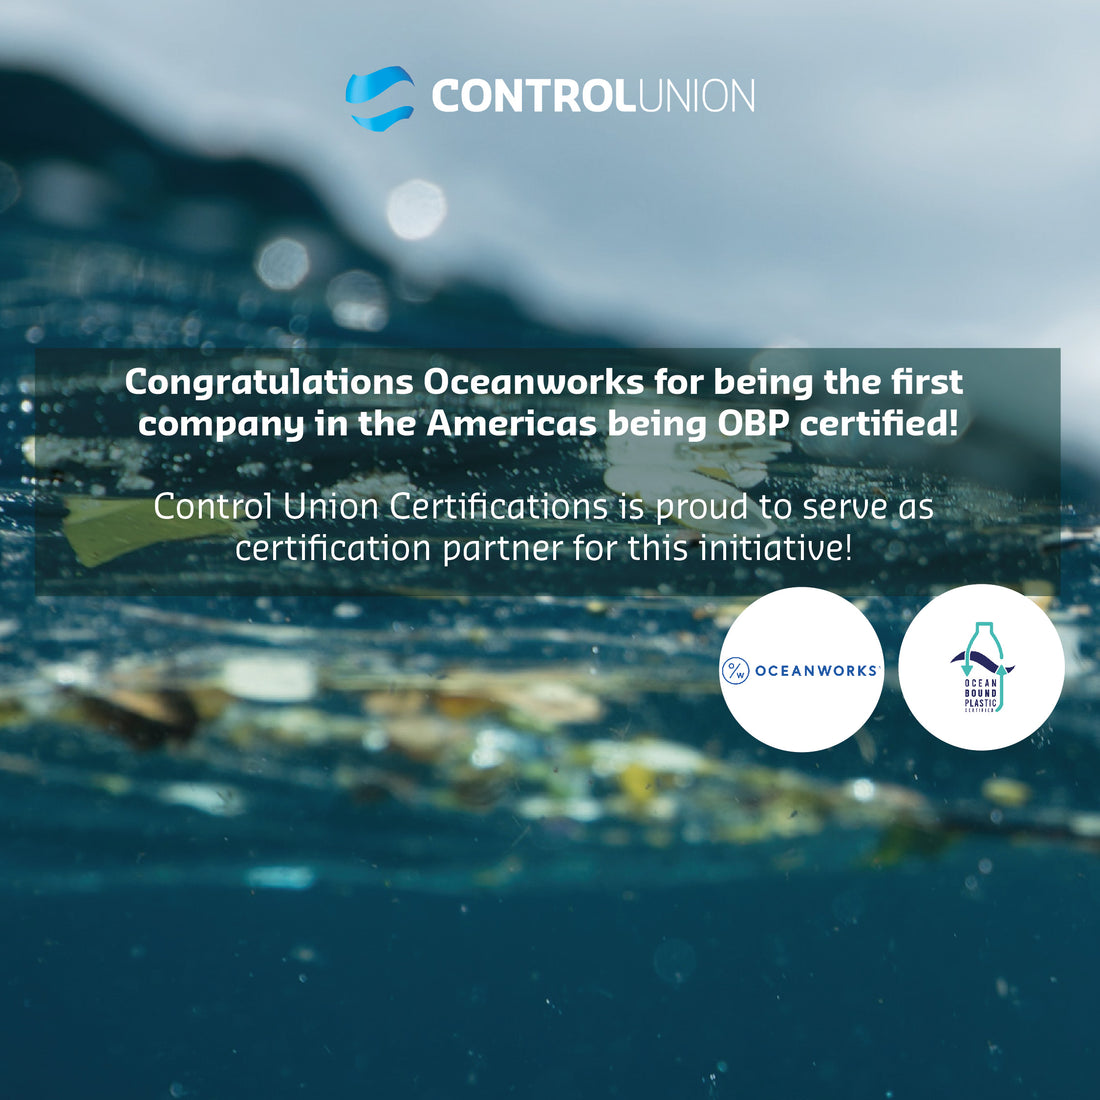 Oceanworks menjadi perusahaan pertama yang mendapatkan sertifikasi OBP di Amerika!